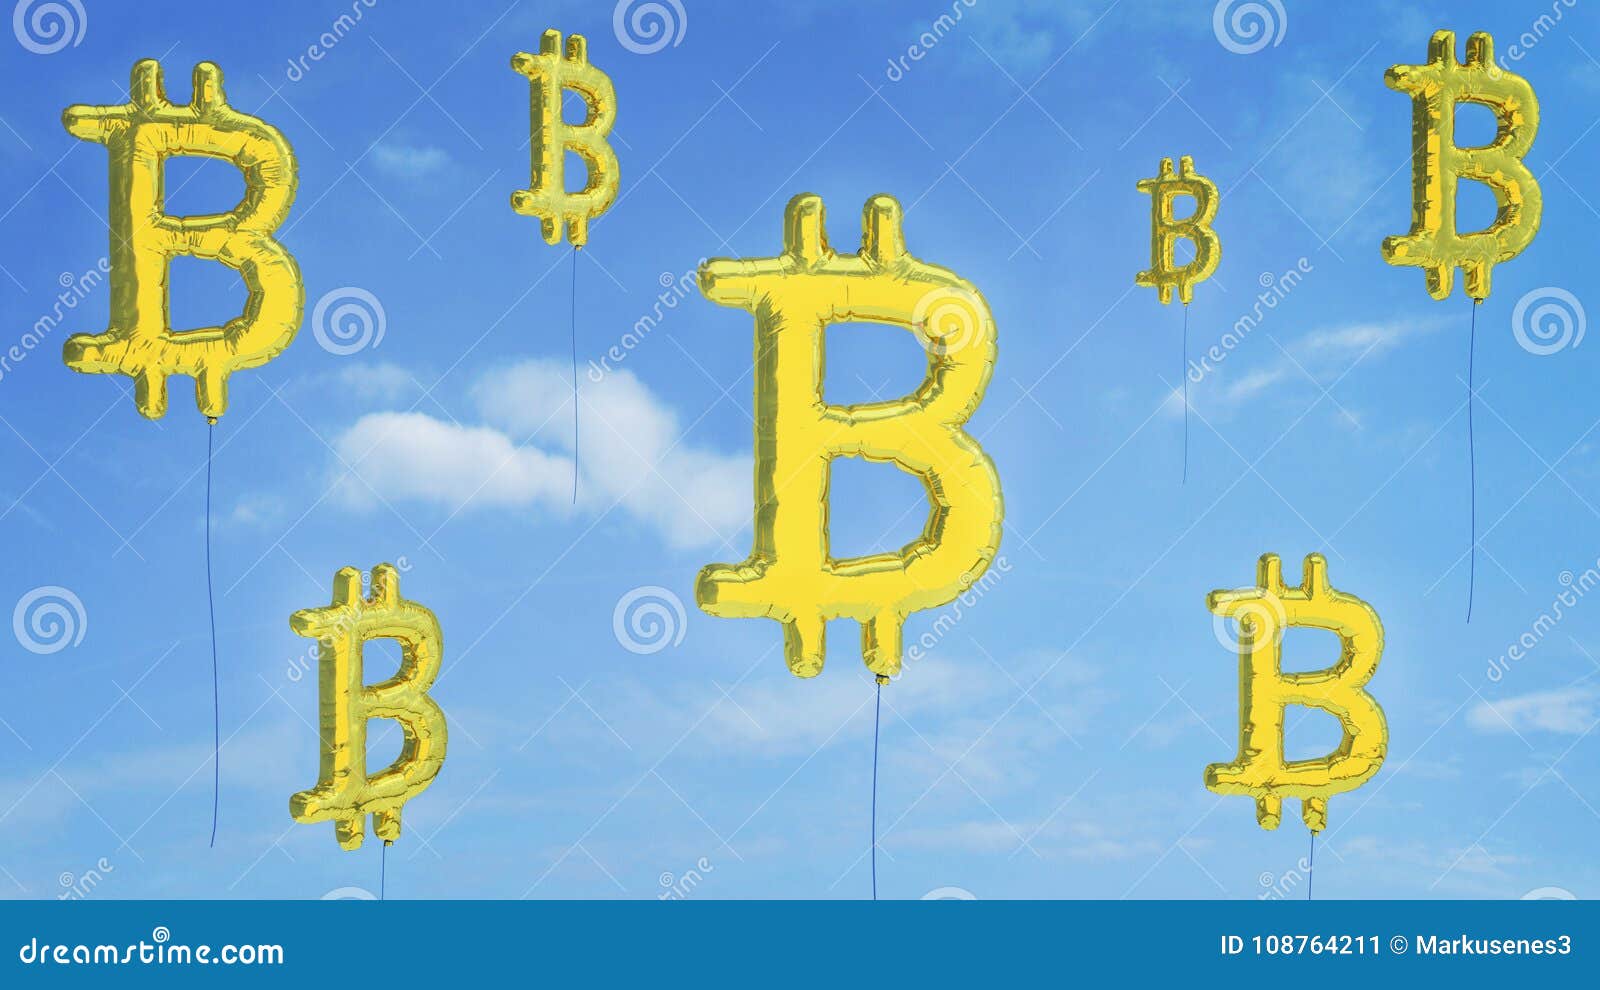 bitcoin financial bubble